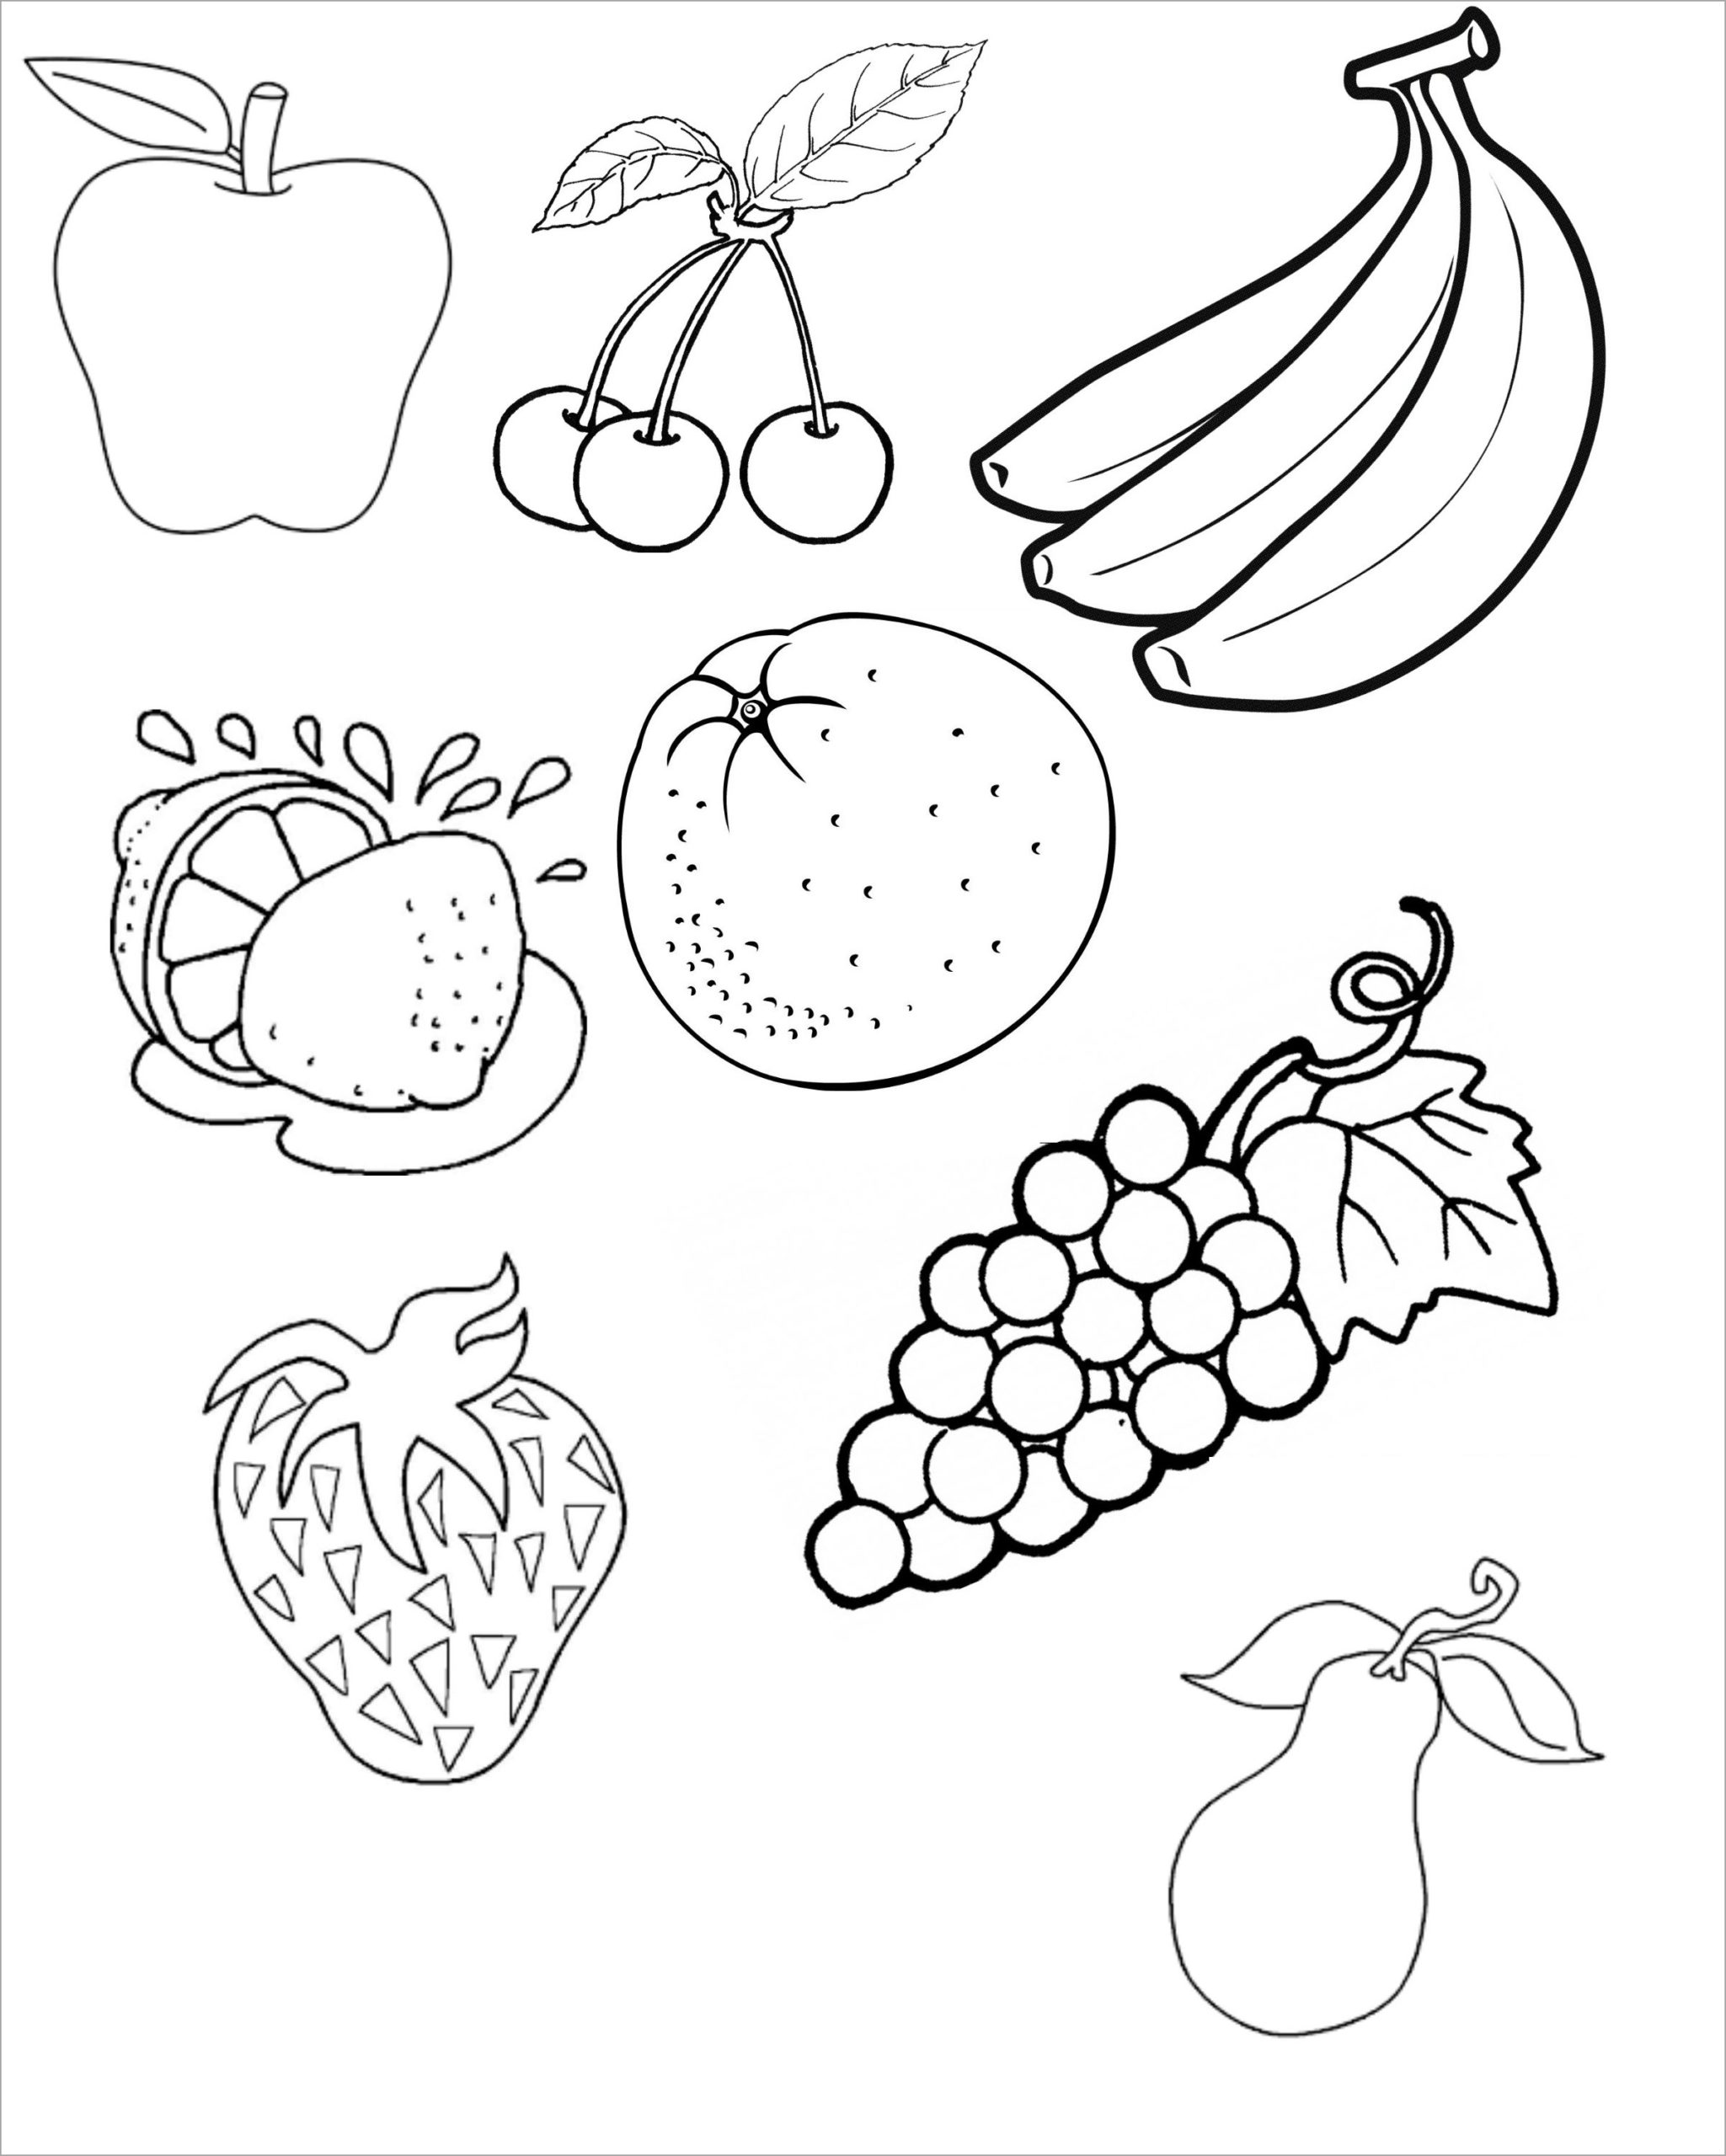 How to Draw Fruits Cách vẽ Trái cây bốn mùa  YouTube